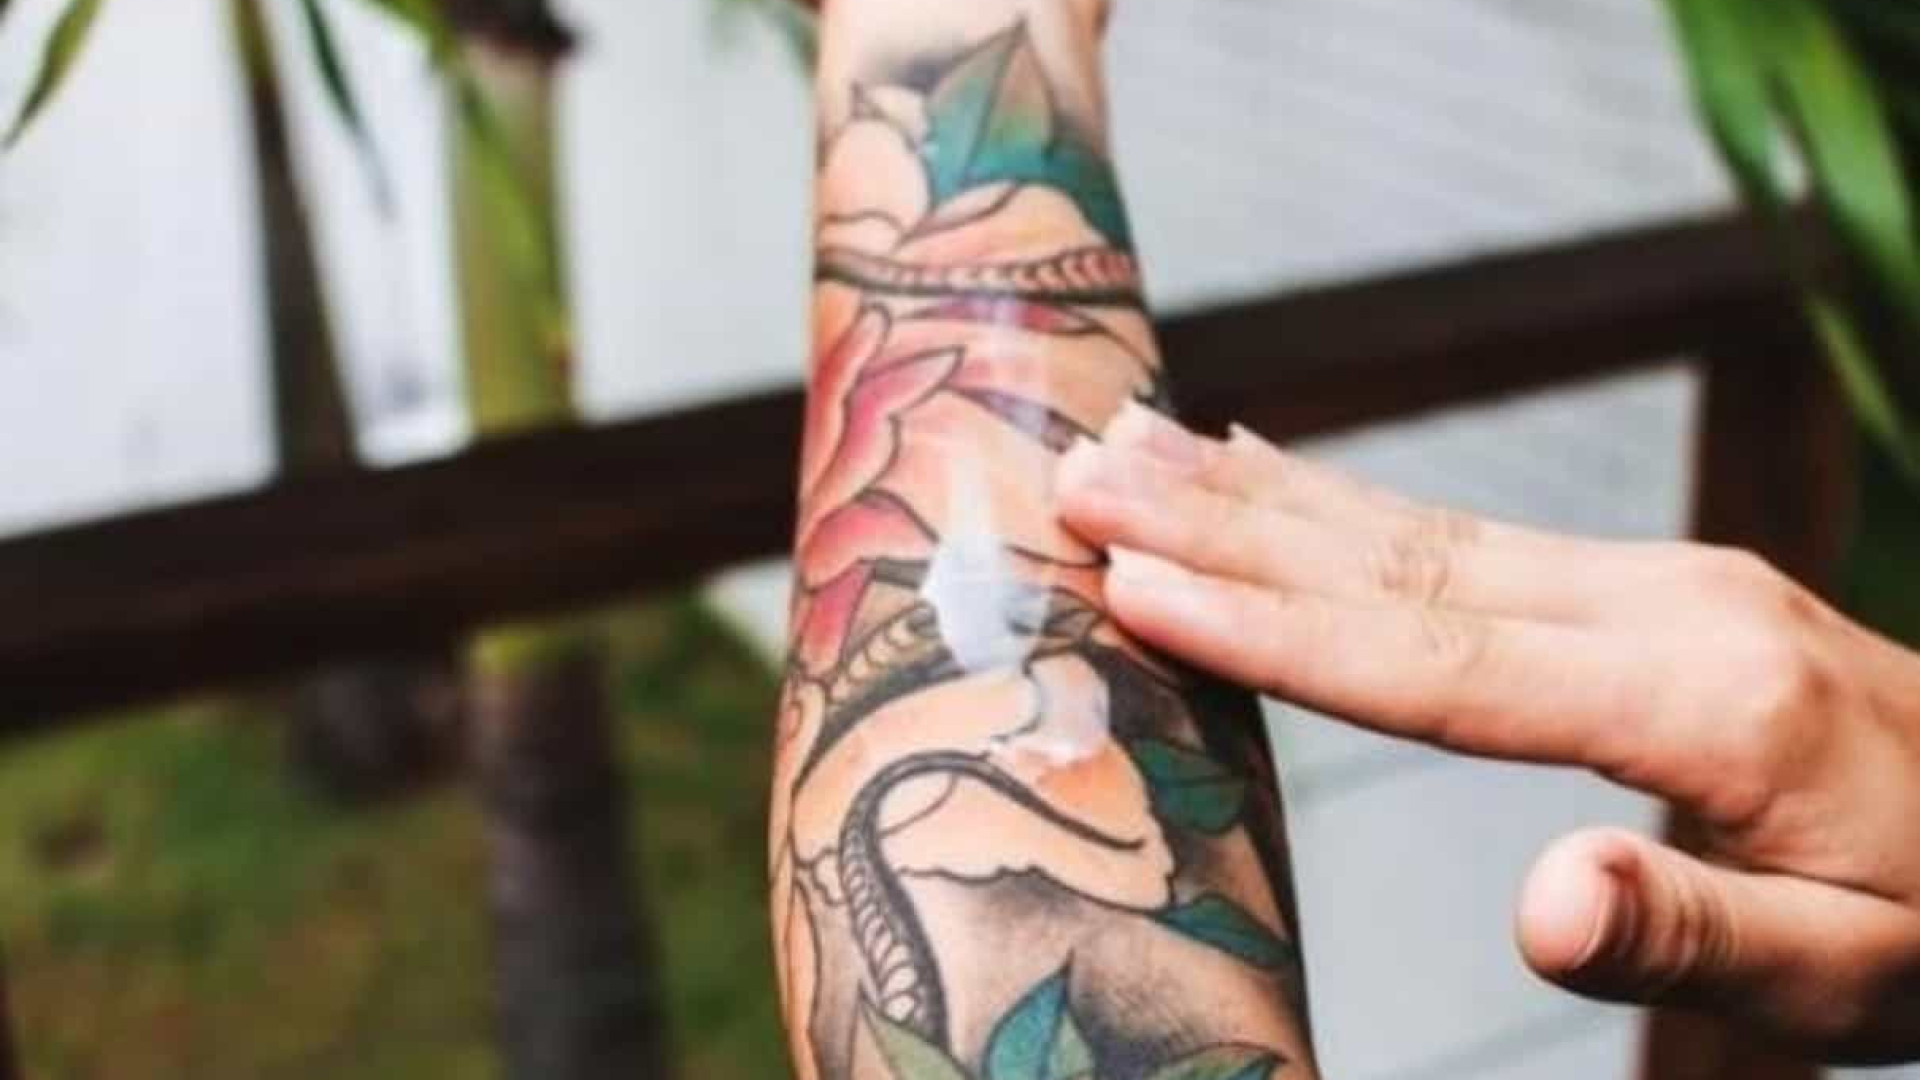 Sabia que tatuagens antigas podem causar novas infecção ou alergia?